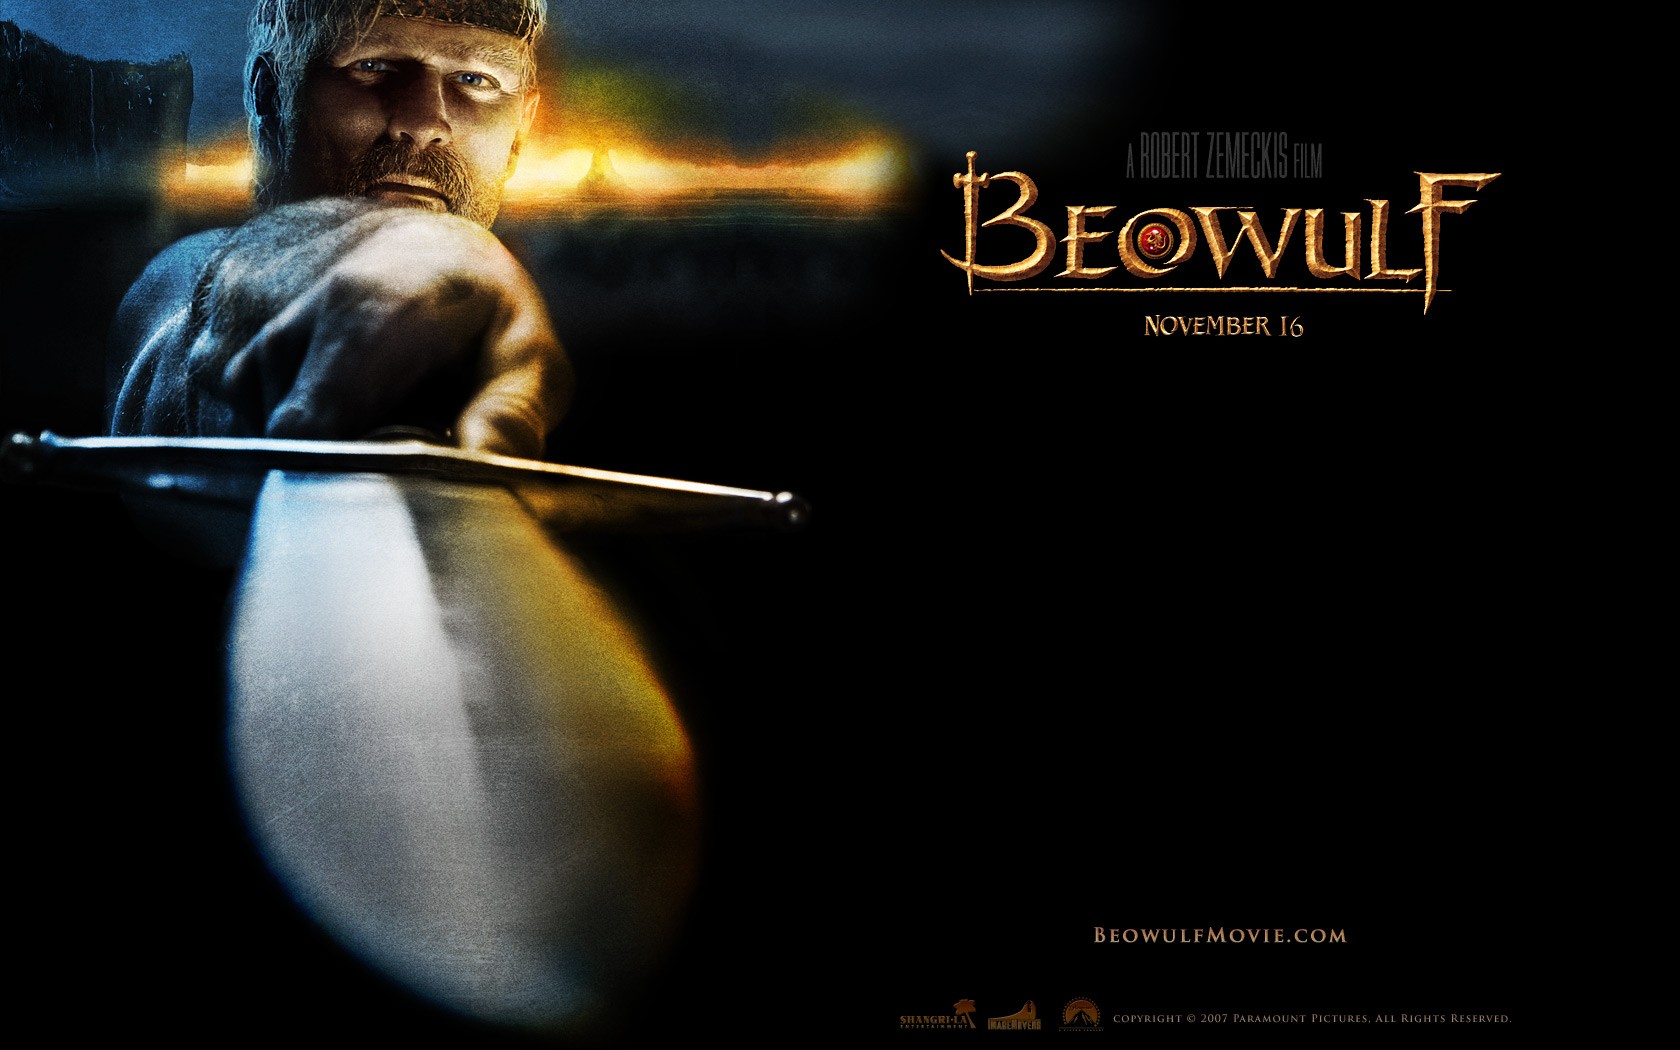 壁纸1680x1050电影壁纸 贝奥武夫 降龙伏魔 Beowulf 2007 贝奥武夫 北海的诅咒 贝奥武夫 电影壁纸 Movie Wallpaper Beowulf 2007壁纸 《贝奥武夫 Beowulf(2007)》壁纸 《贝奥武夫 Beowulf(2007)》图片 《贝奥武夫 Beowulf(2007)》素材 影视壁纸 影视图库 影视图片素材桌面壁纸